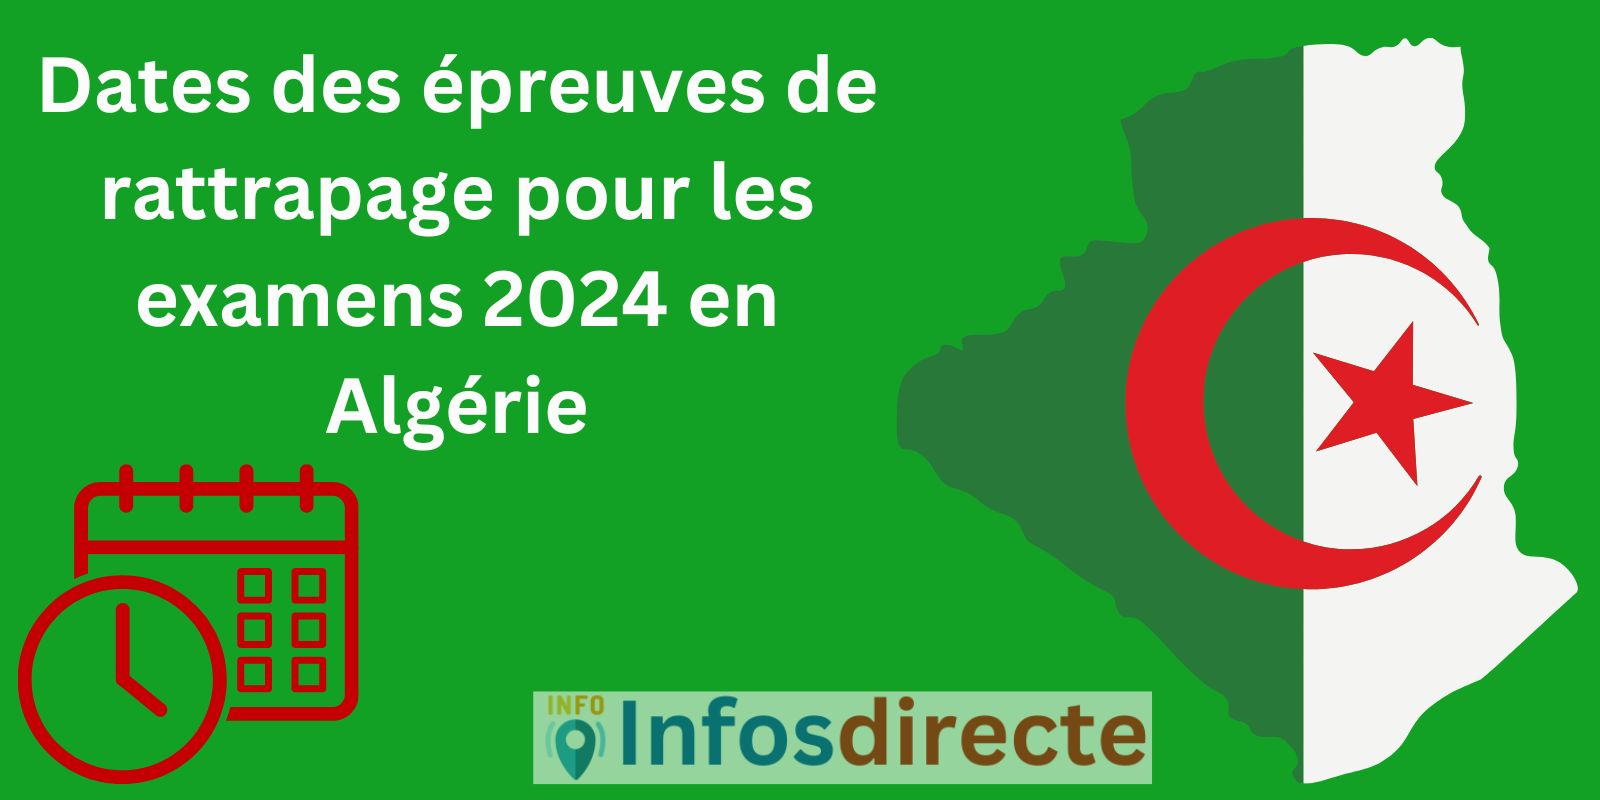 Dates des épreuves de rattrapage pour les examens 2024 en Algérie